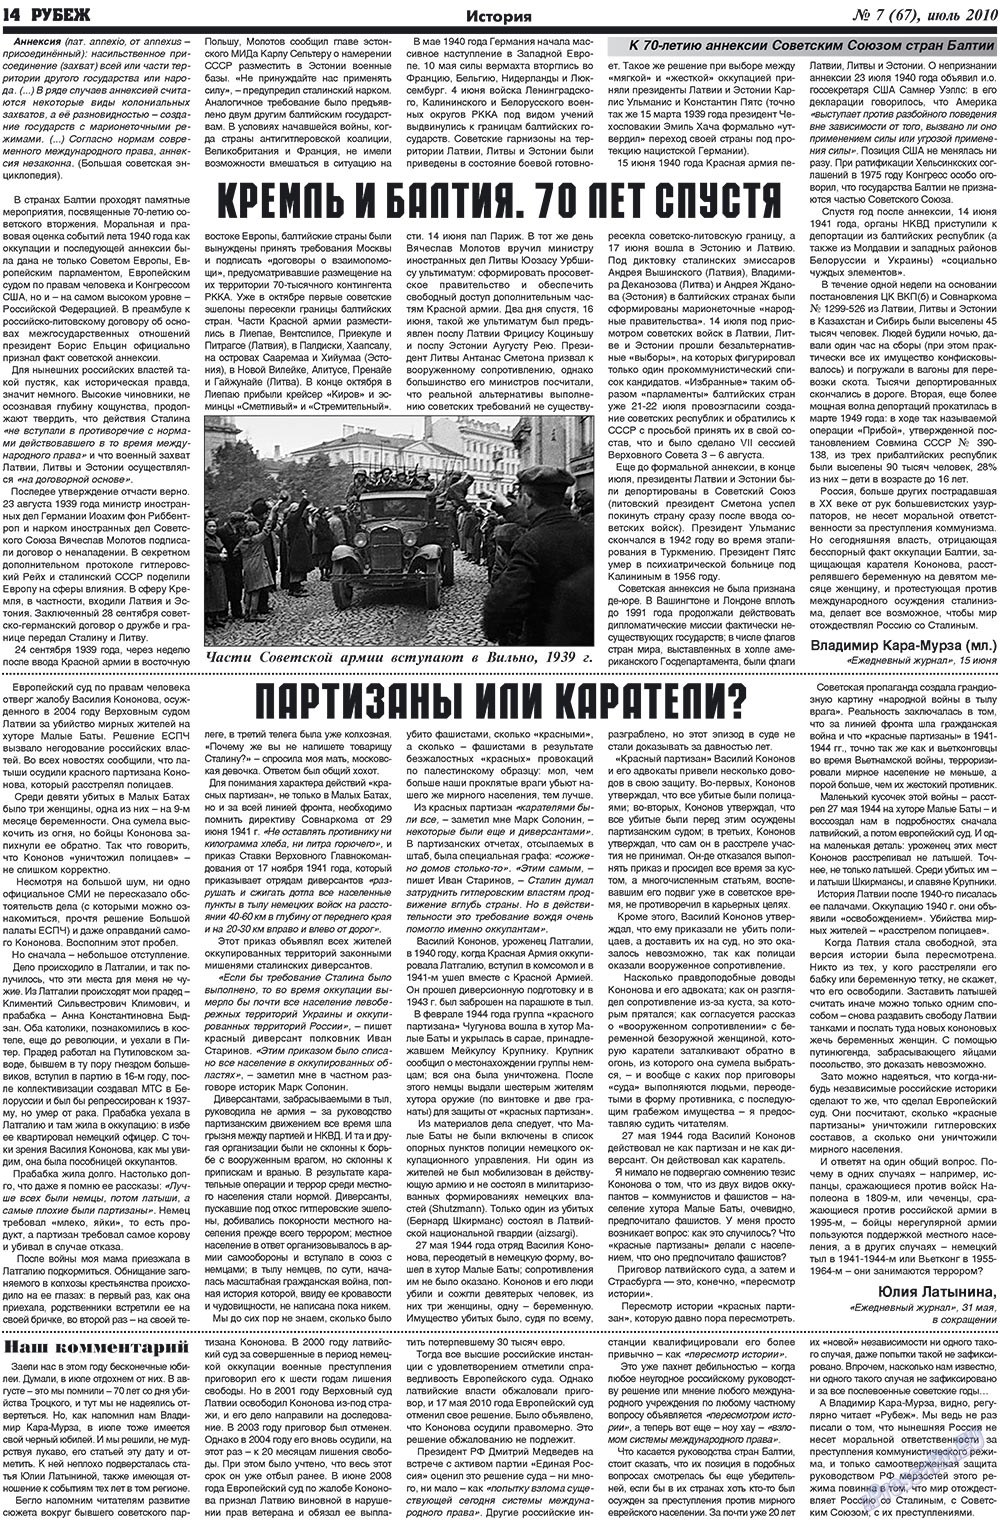 Рубеж (газета). 2010 год, номер 7, стр. 14